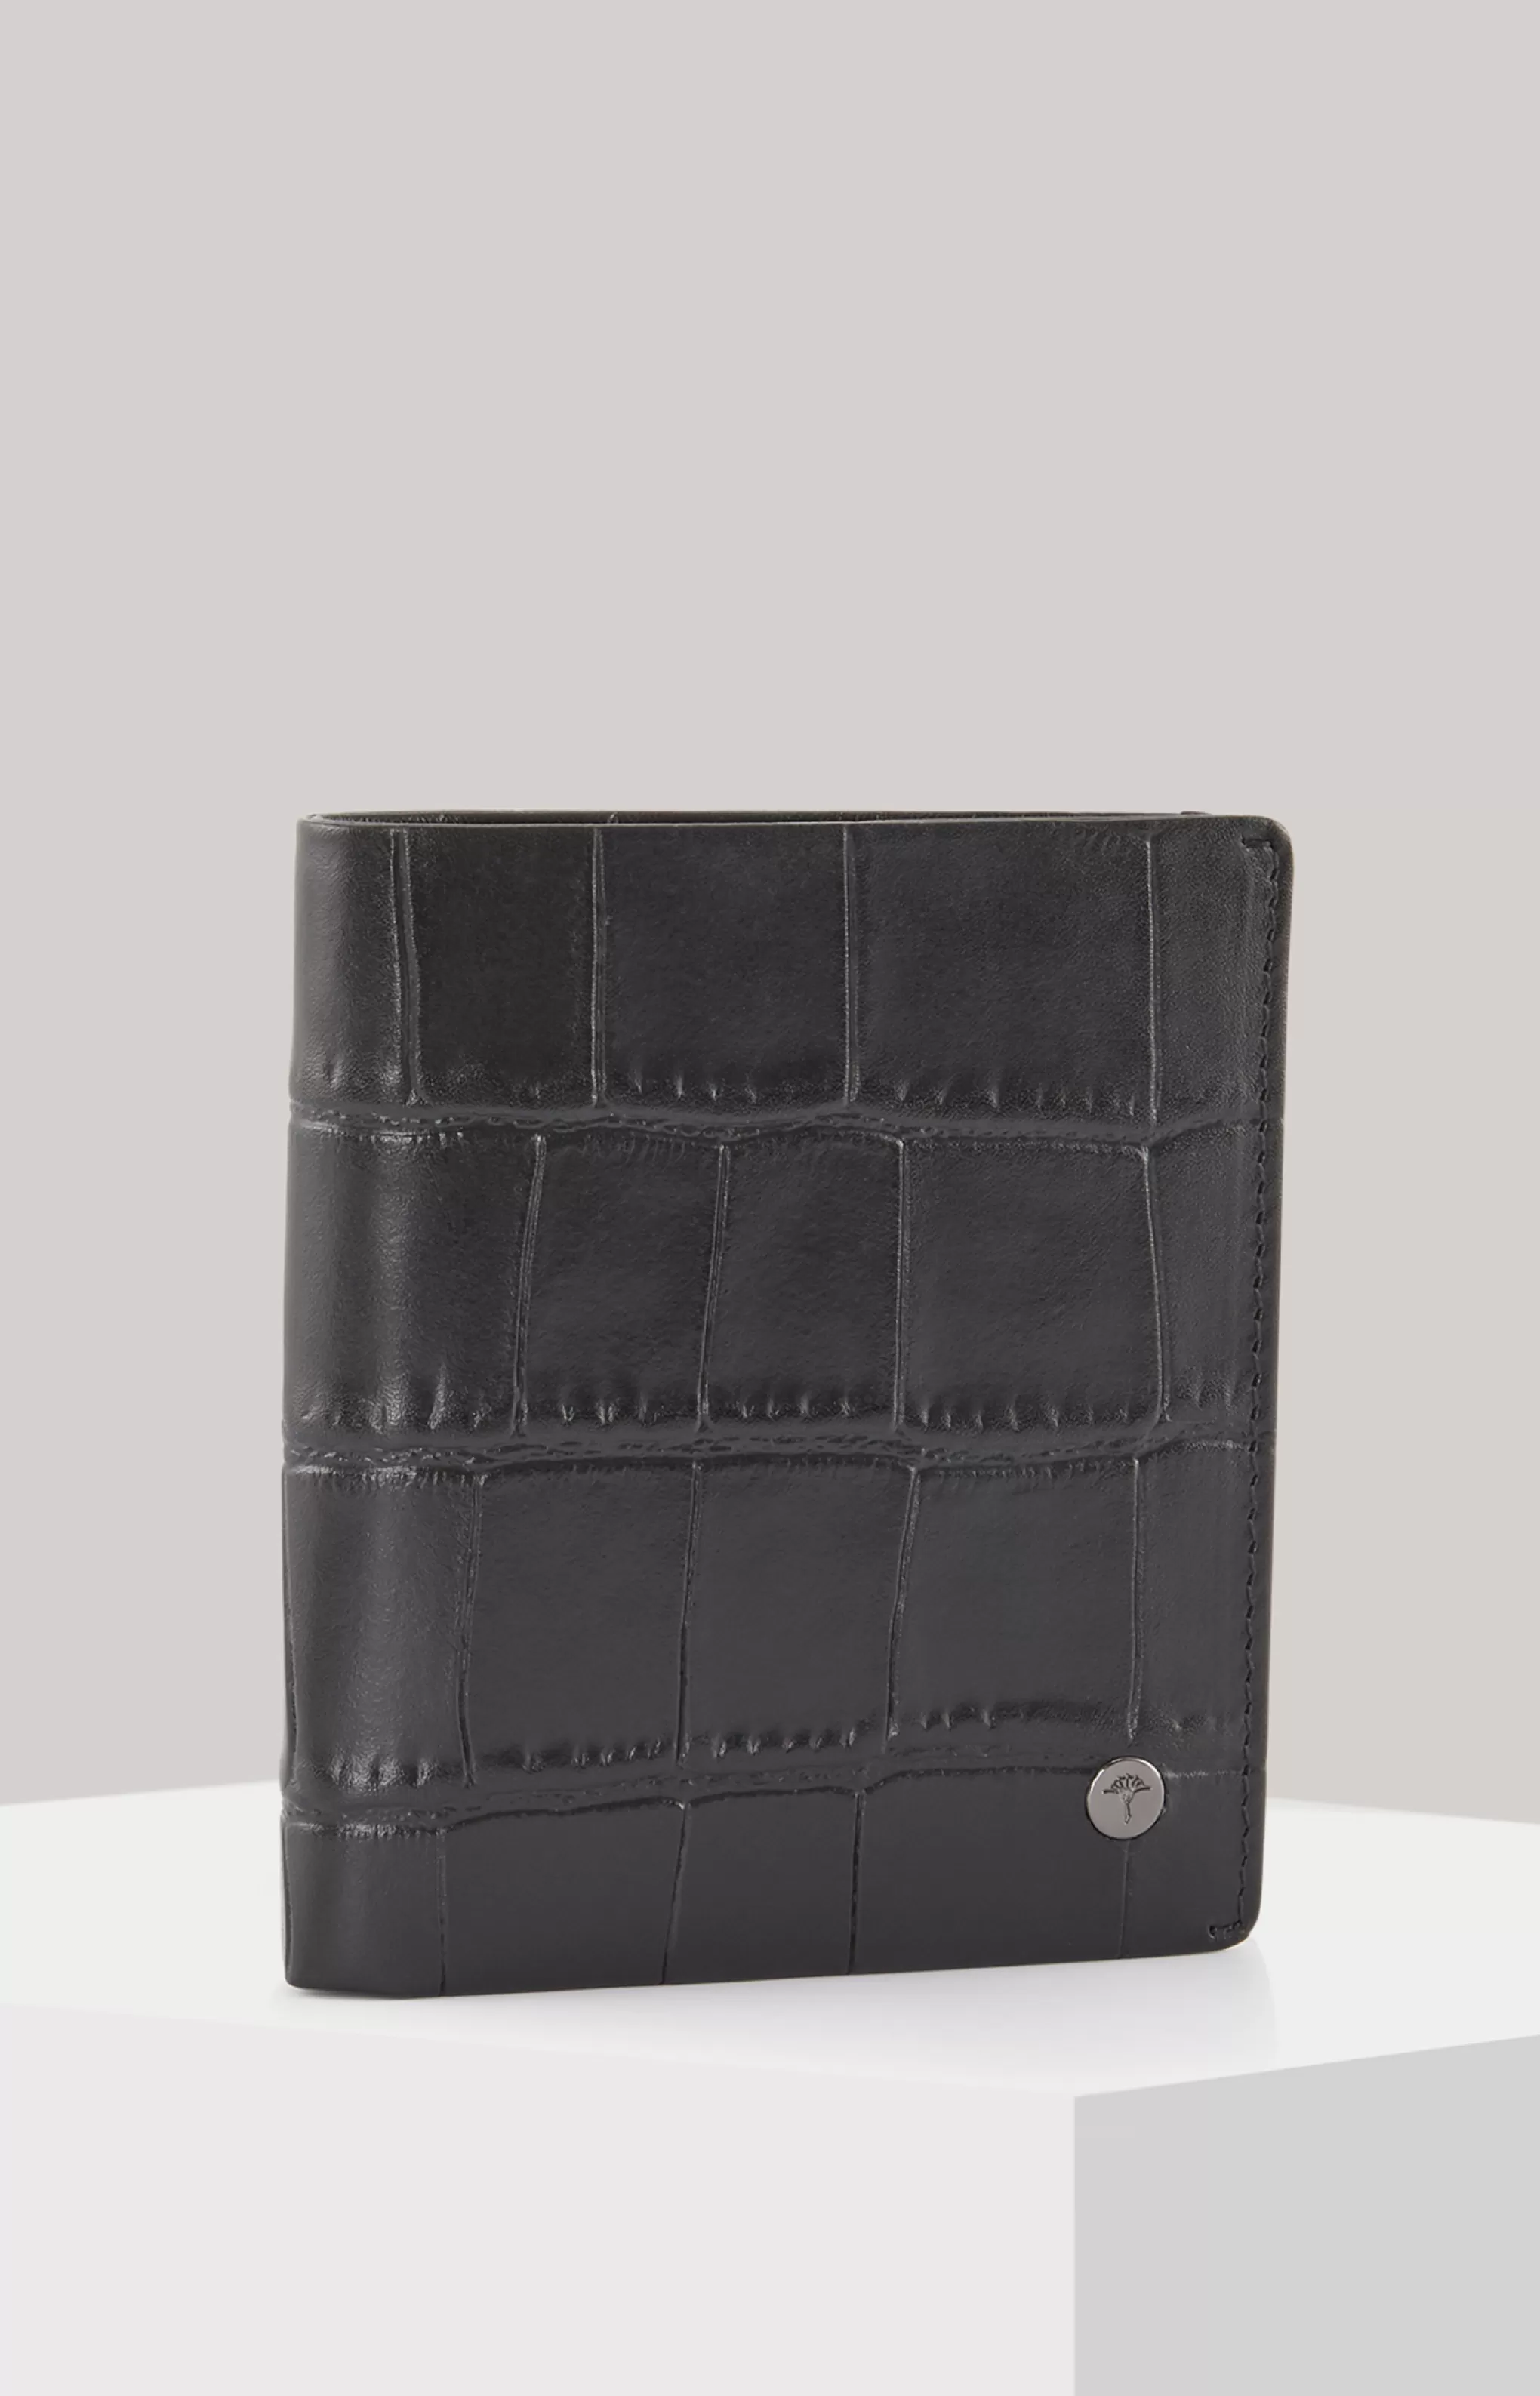 Small Leather Goods*JOOP Small Leather Goods Fano Daphnis wallet in